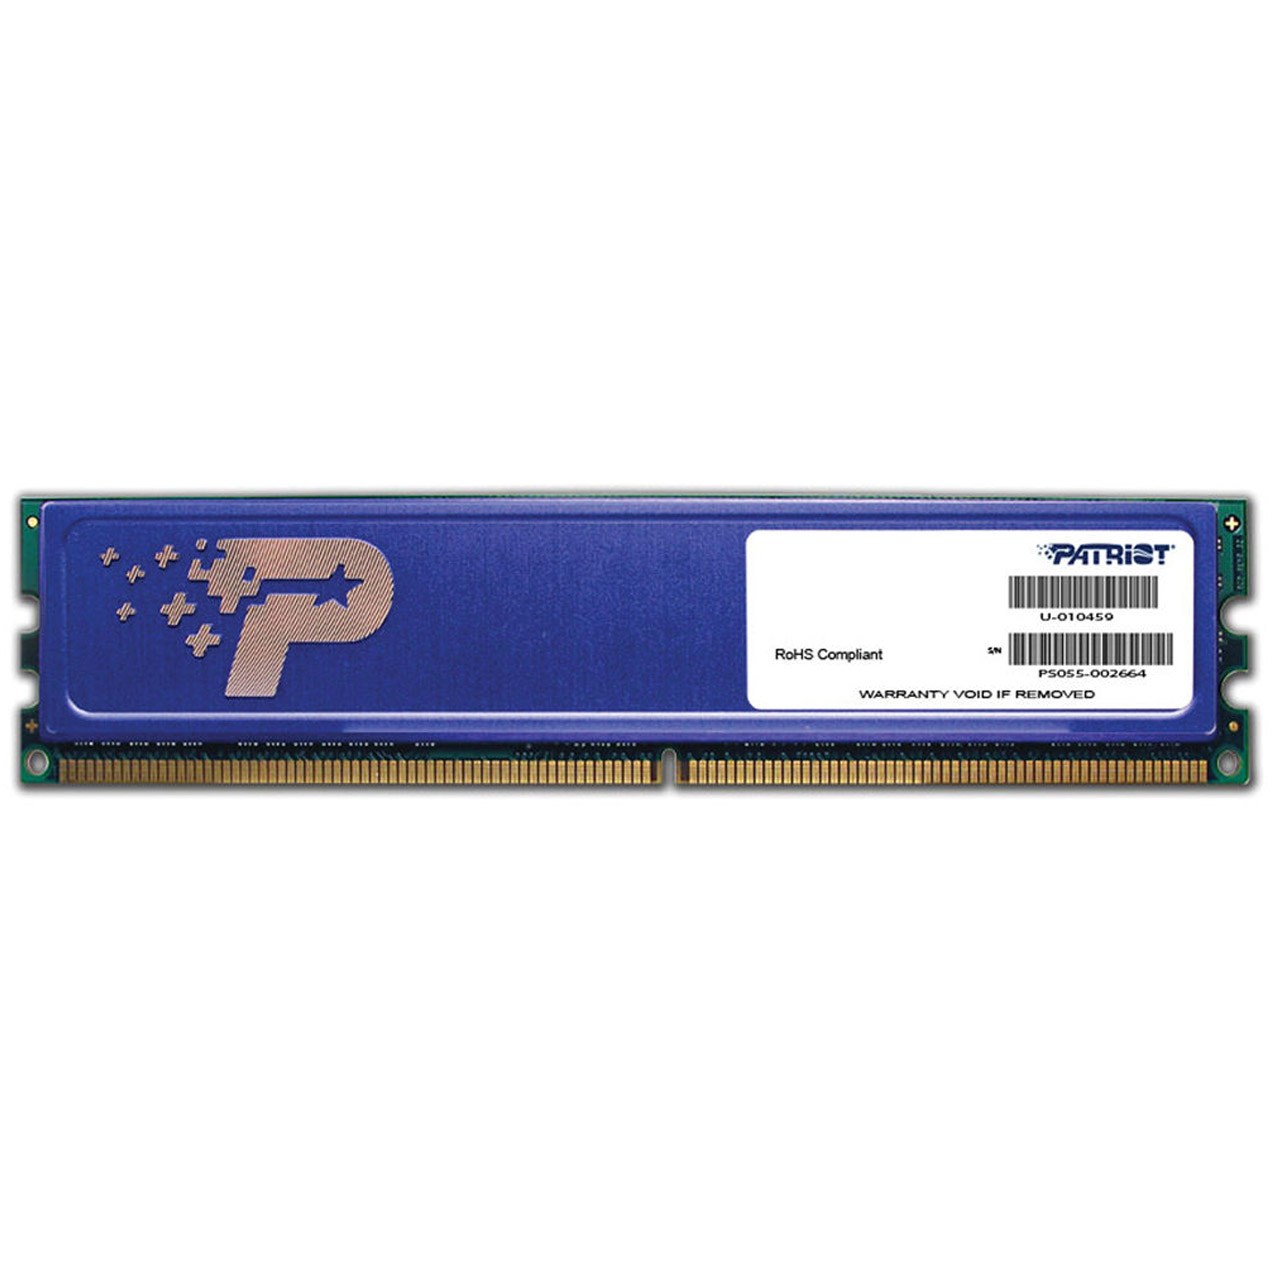 رم دسکتاپ DDR3 تک کاناله 1600 مگاهرتز CL11 پتریوت سری Signature ظرفیت 4 گیگابایت